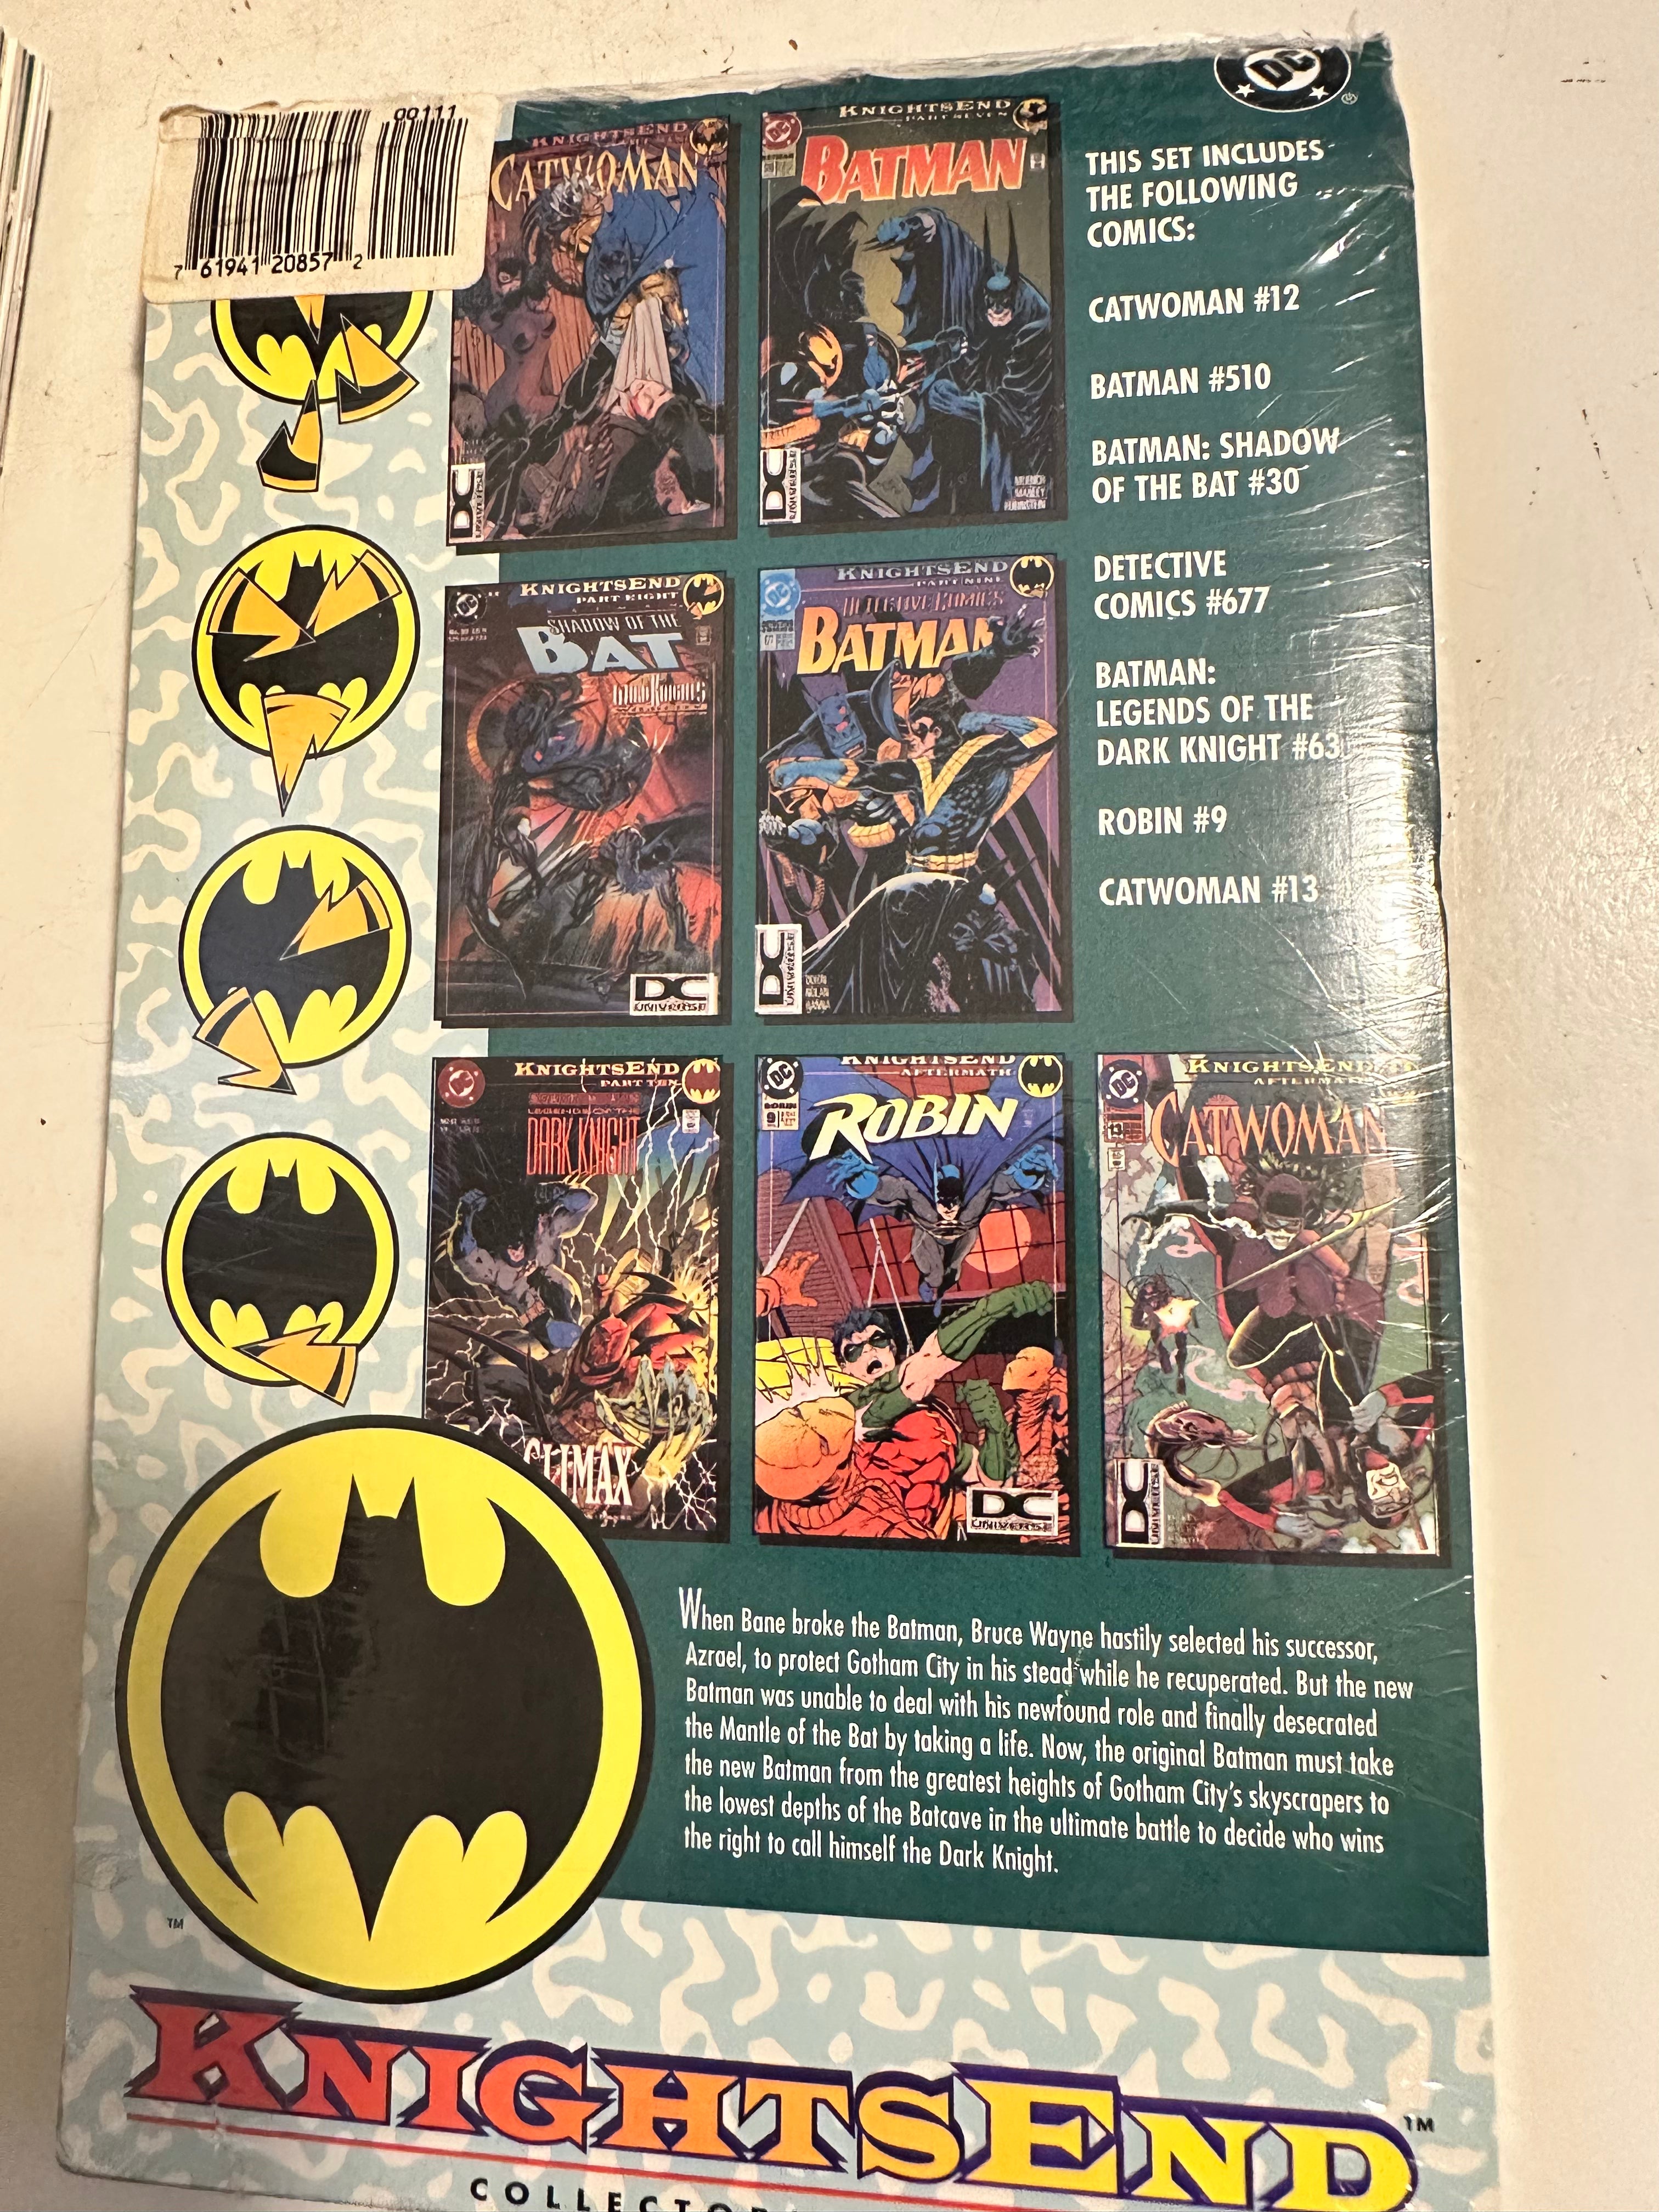 Batman comics Knights End vintage 7 comics factory sealed lot deal!